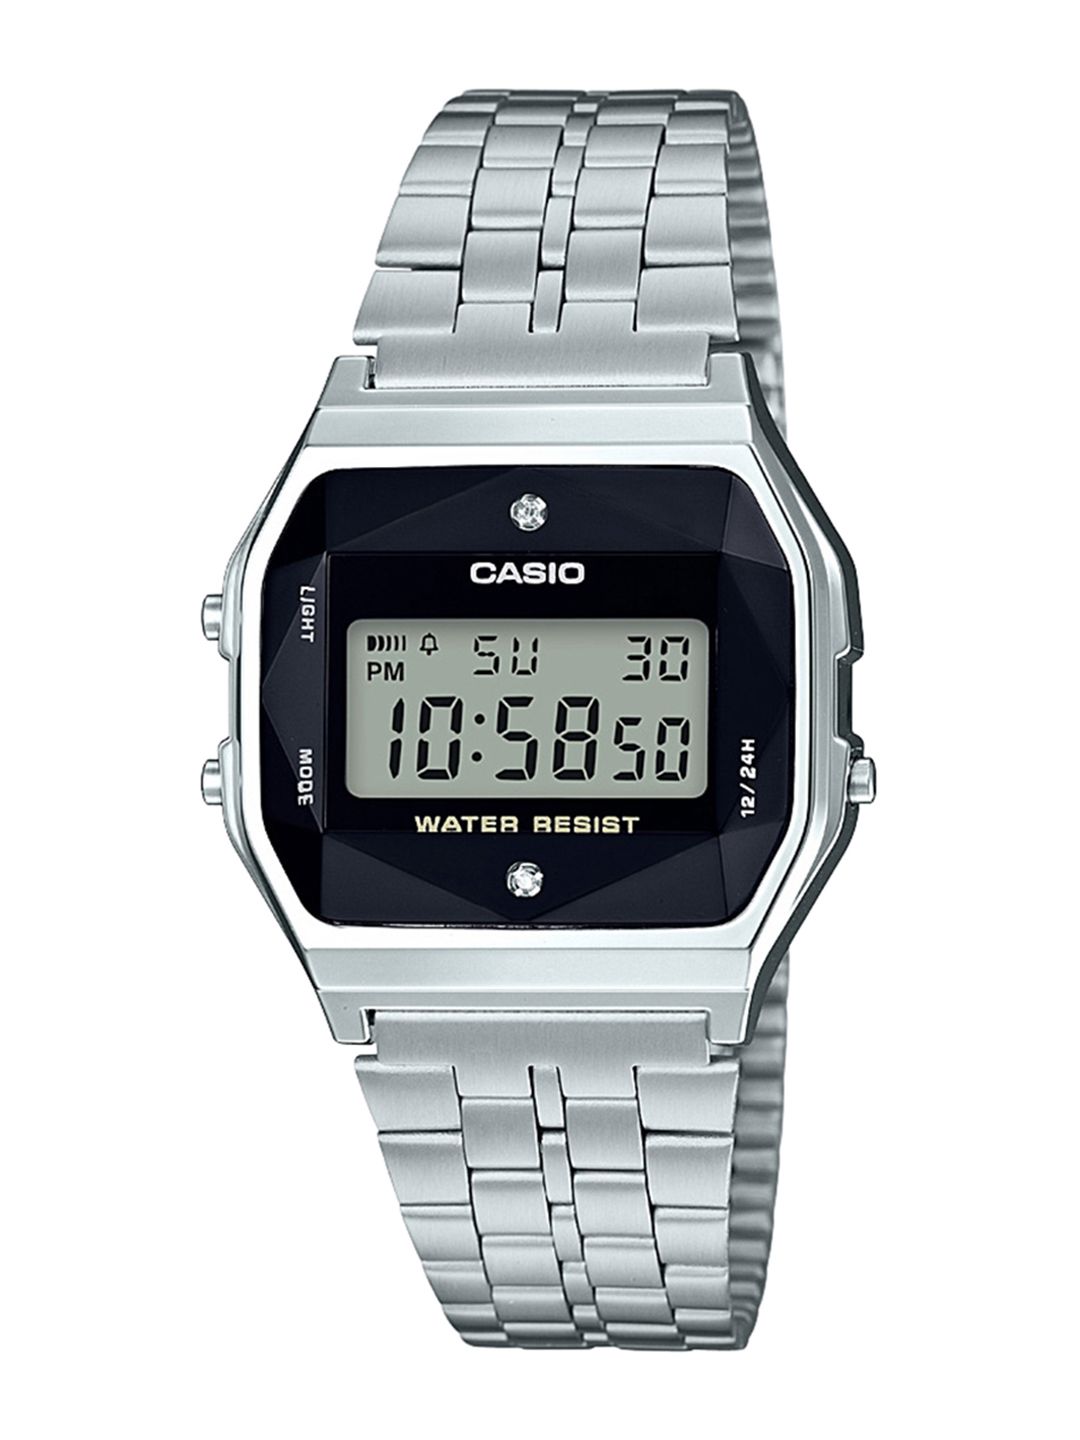 CASIO Unisex Black Digital Watch D163 Price in India